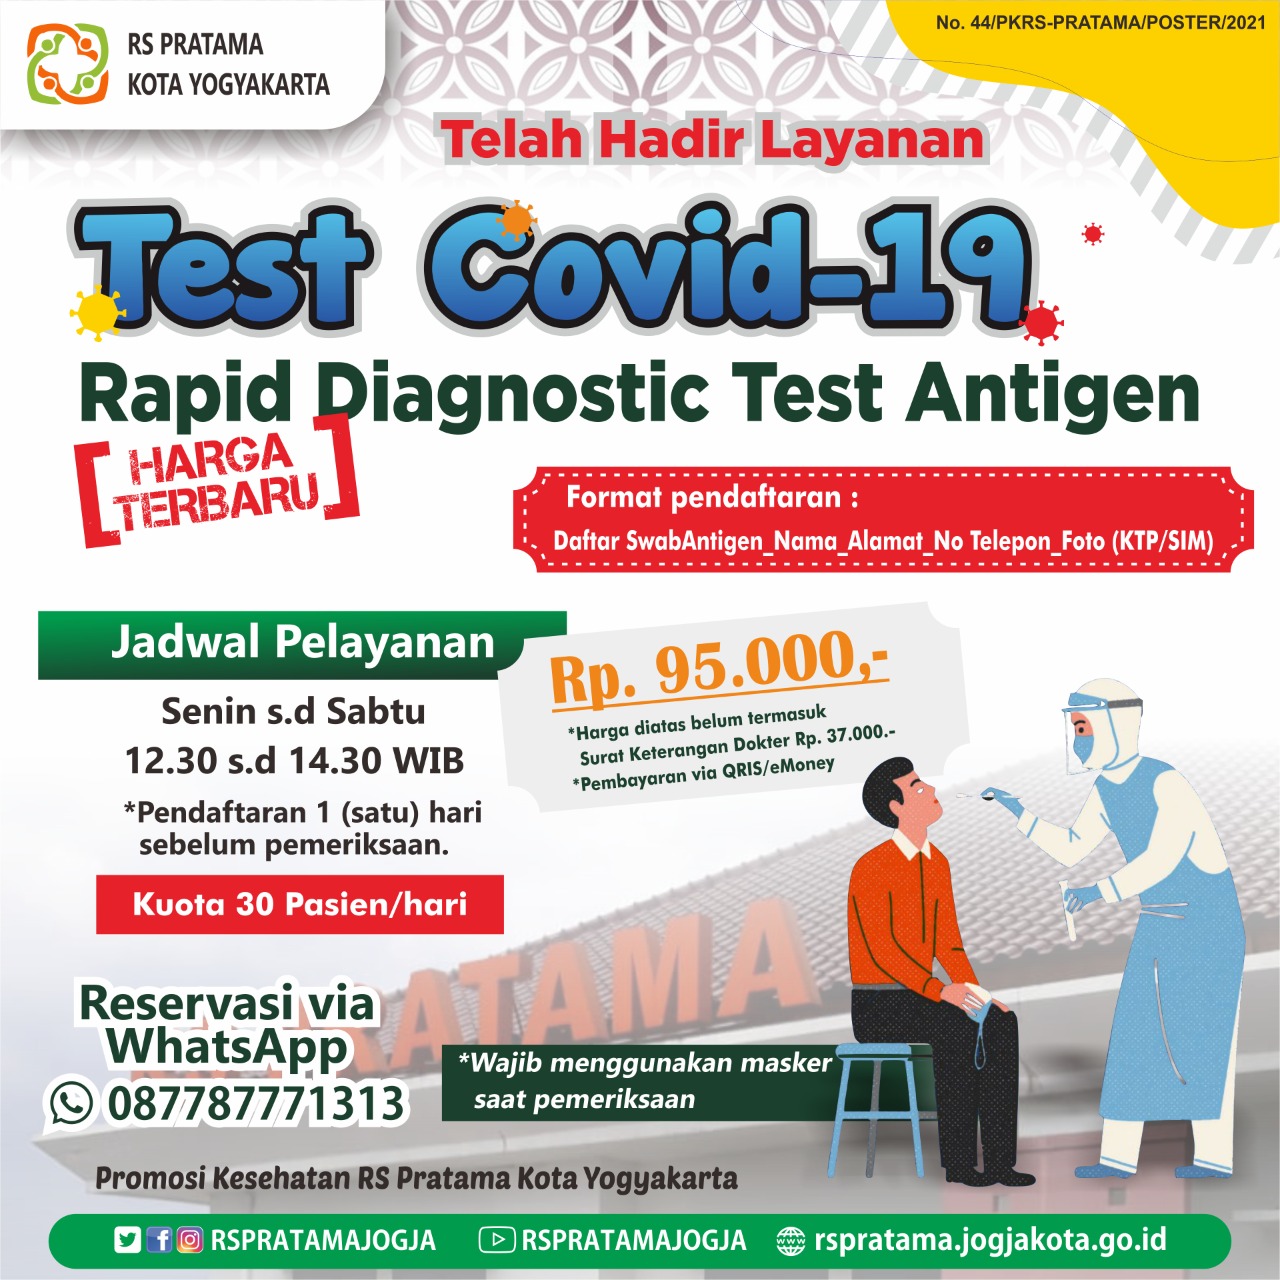 Update Informasi Layanan Rapid Diagnostic Test Antigen di RS Pratama Kota Yogyakarta